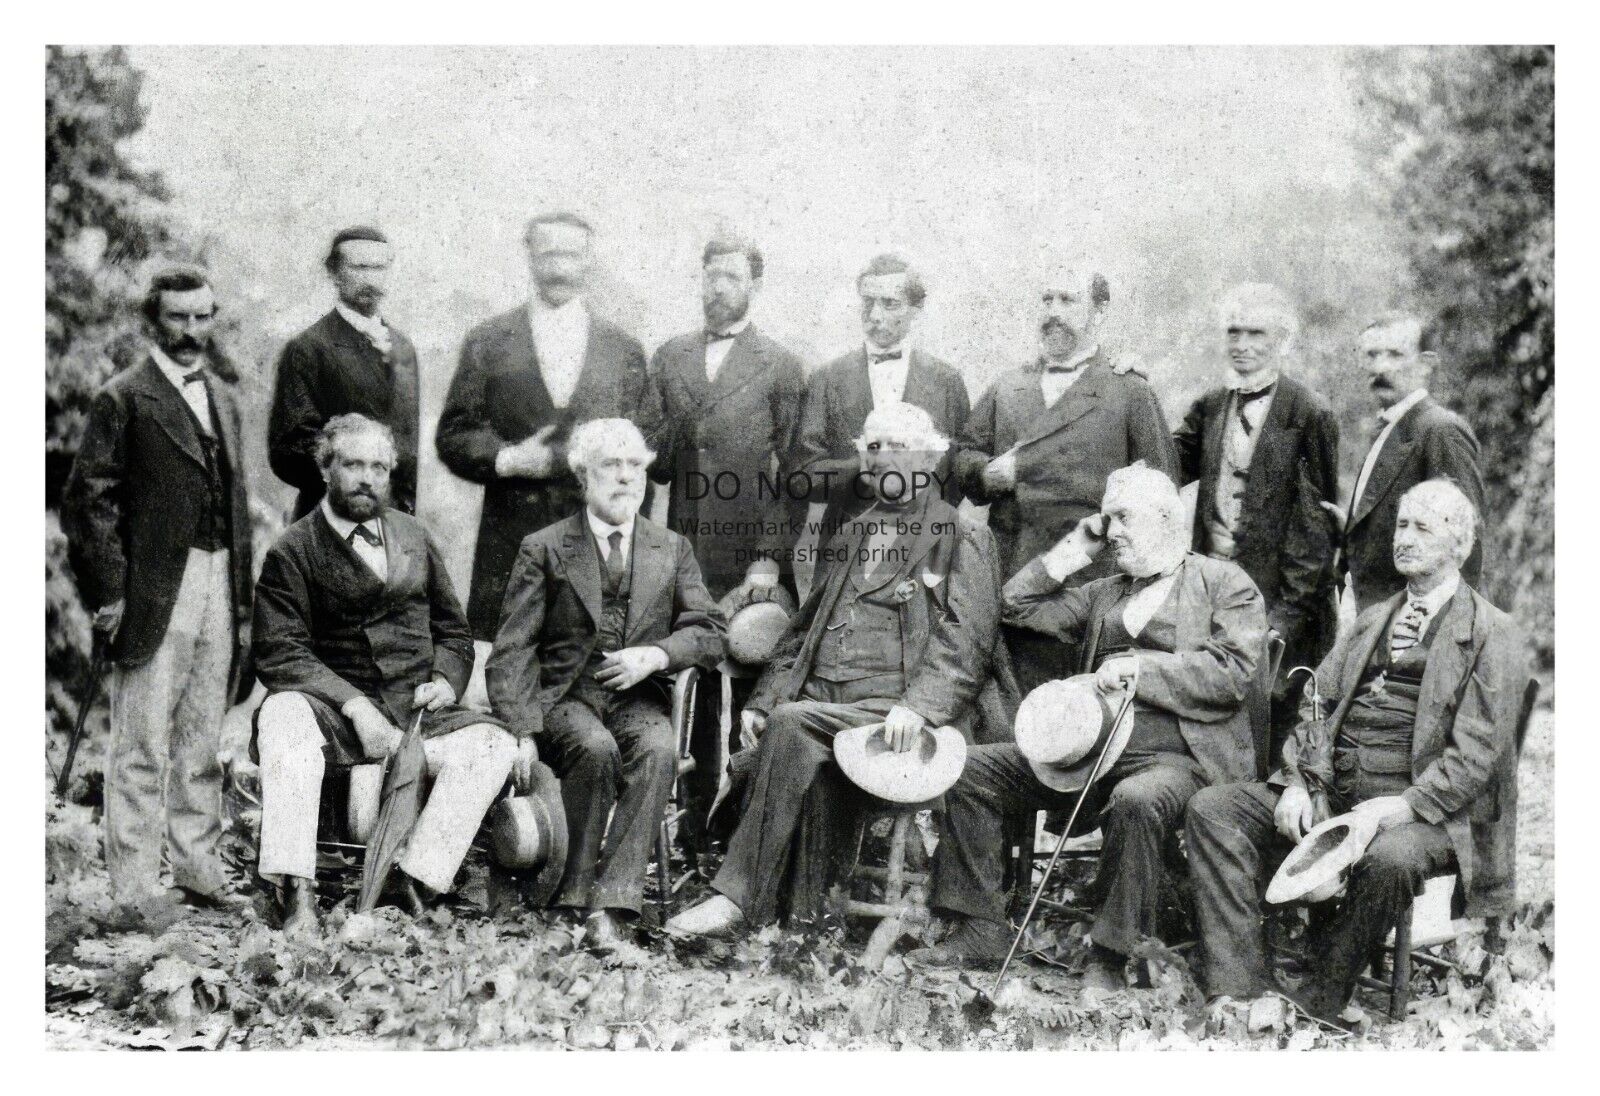 GENERAL ROBERT E. LEE AND HIS CIVIL WAR CONFEDERATE GENERALS 1869 4X6 PHOTO